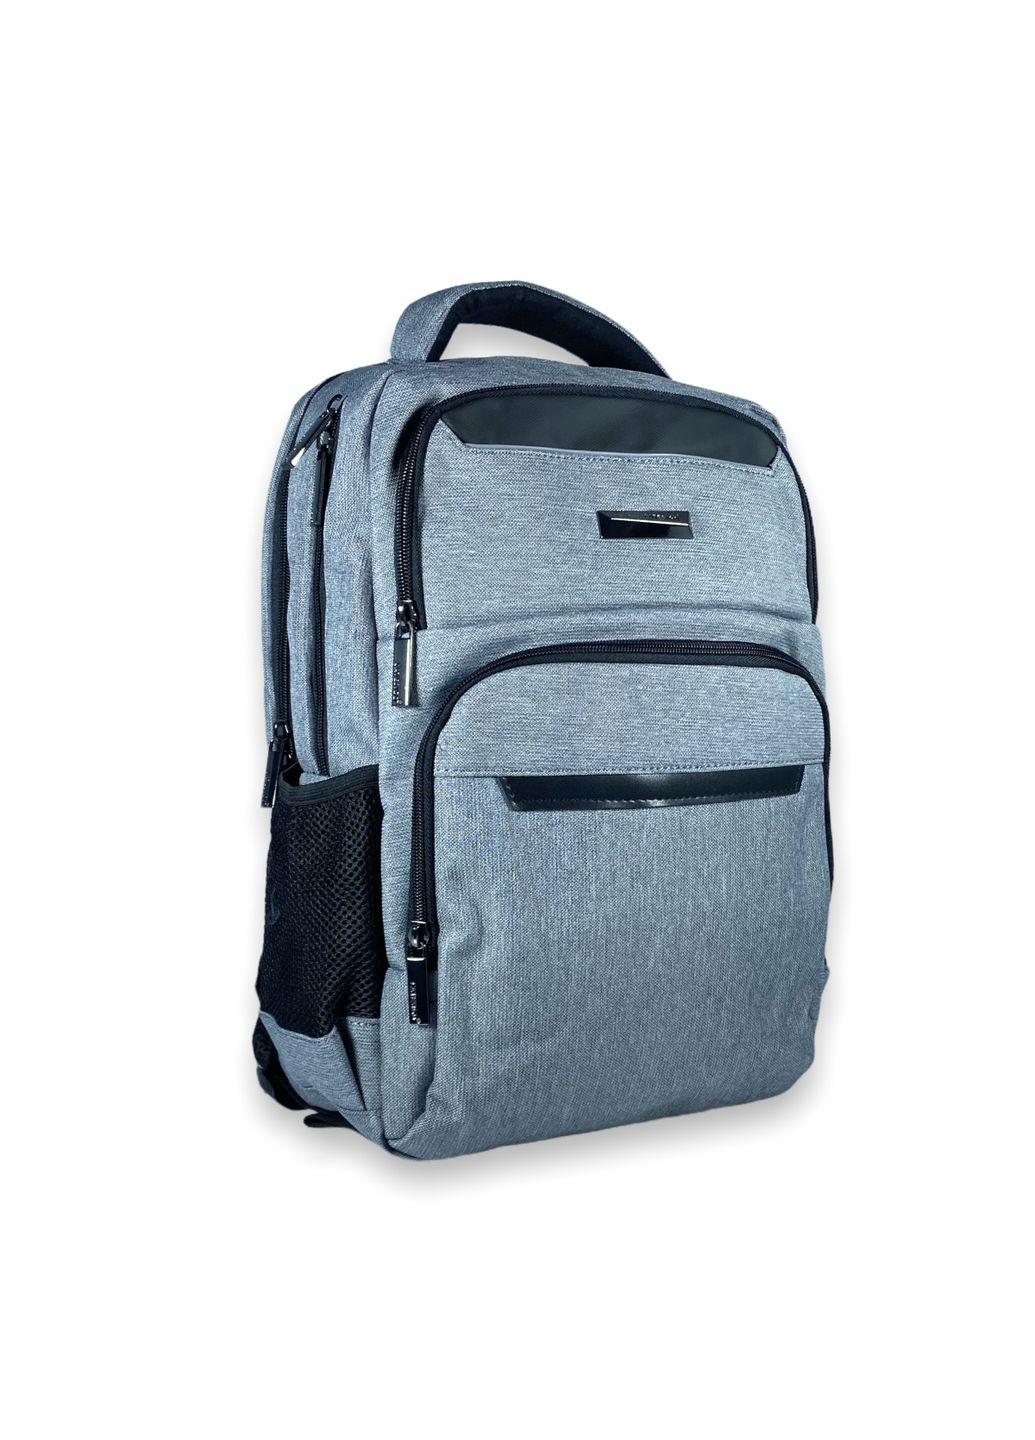 Міський рюкзак 15 л, 3 відділи, USB роз'єм, кабель, одна фронтальна кишеня, розмір: 40*28*14 см, сірий Catesigo (284338150)